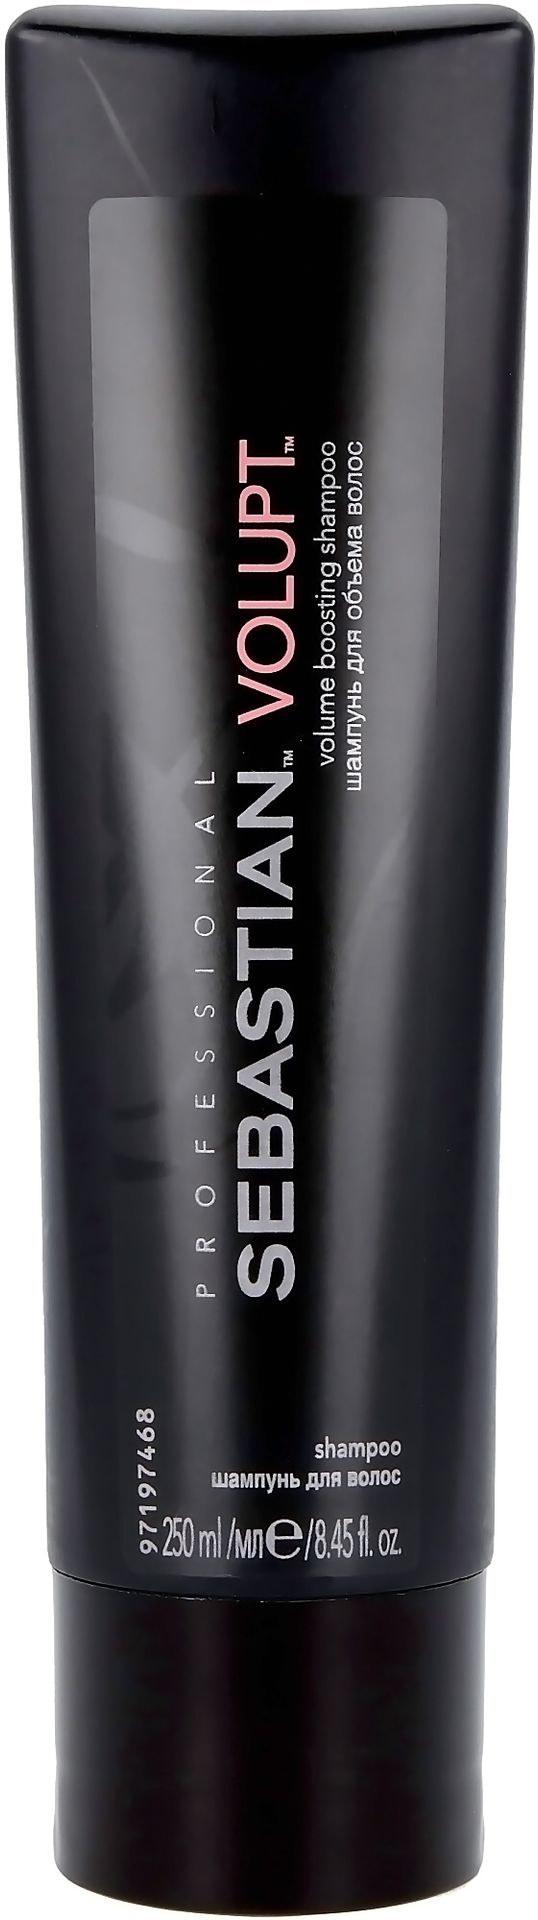 Sebastian Volupt, szampon nadający objętość, 250 ml